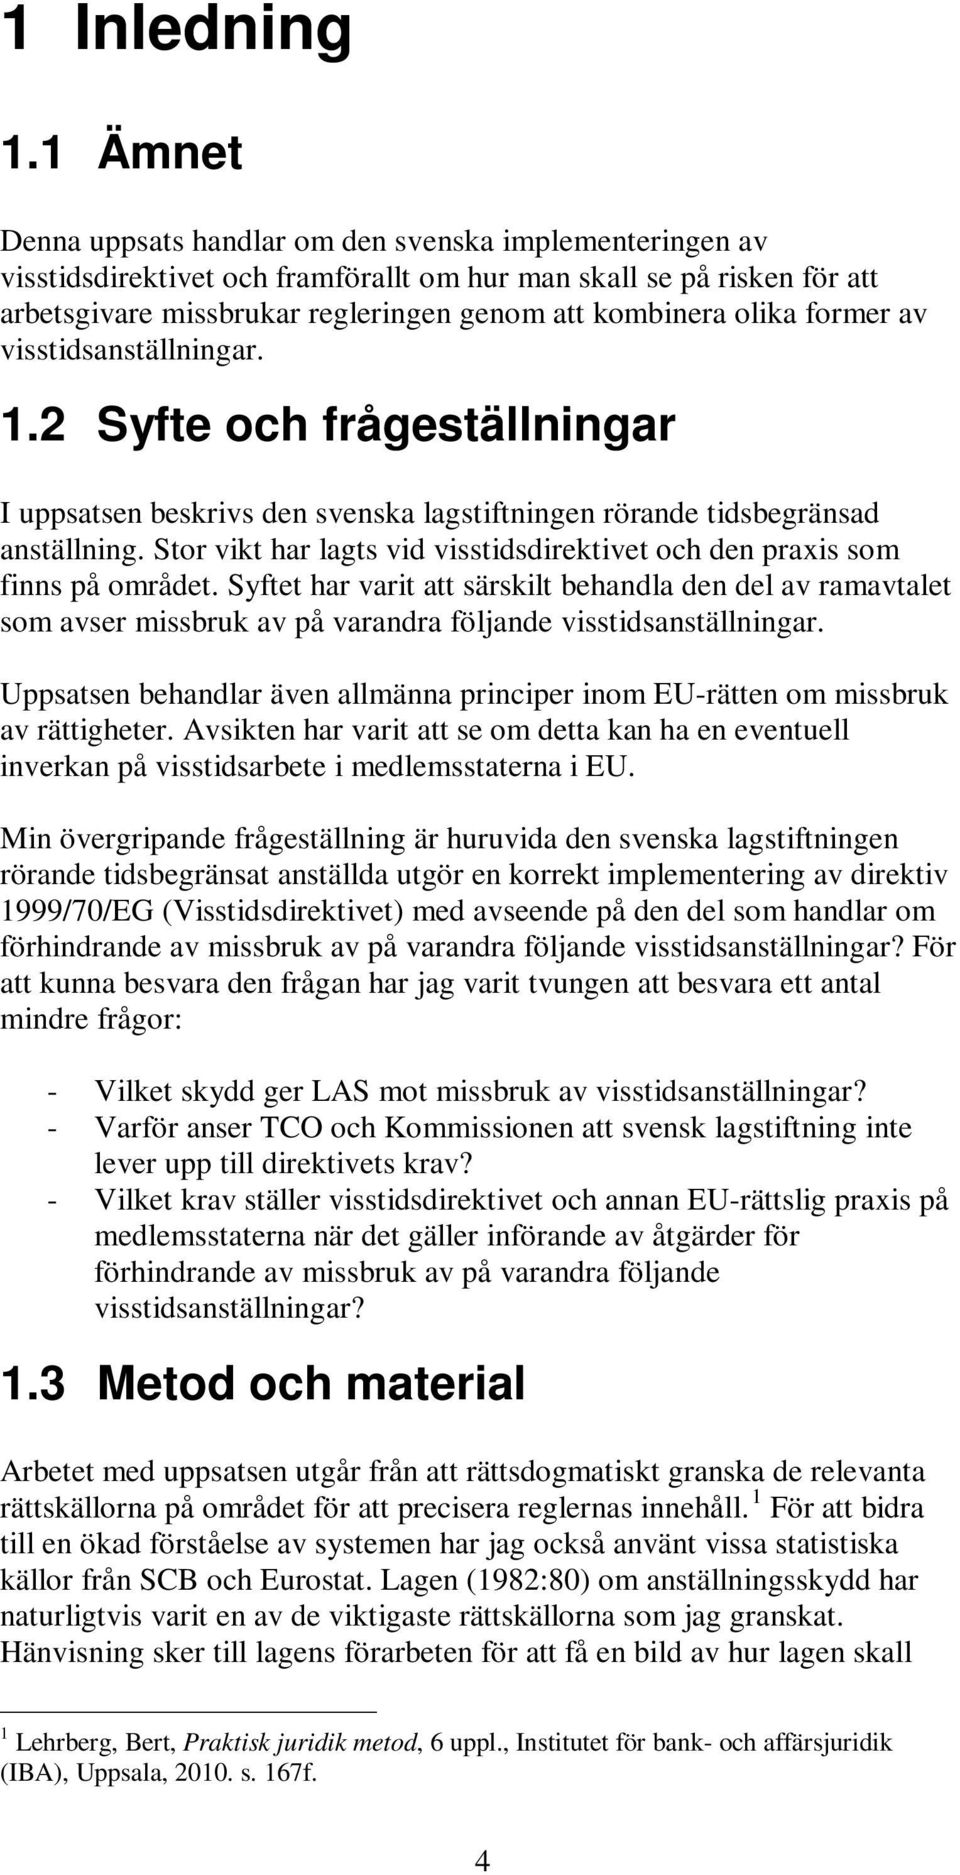 former av visstidsanställningar. 1.2 Syfte och frågeställningar I uppsatsen beskrivs den svenska lagstiftningen rörande tidsbegränsad anställning.